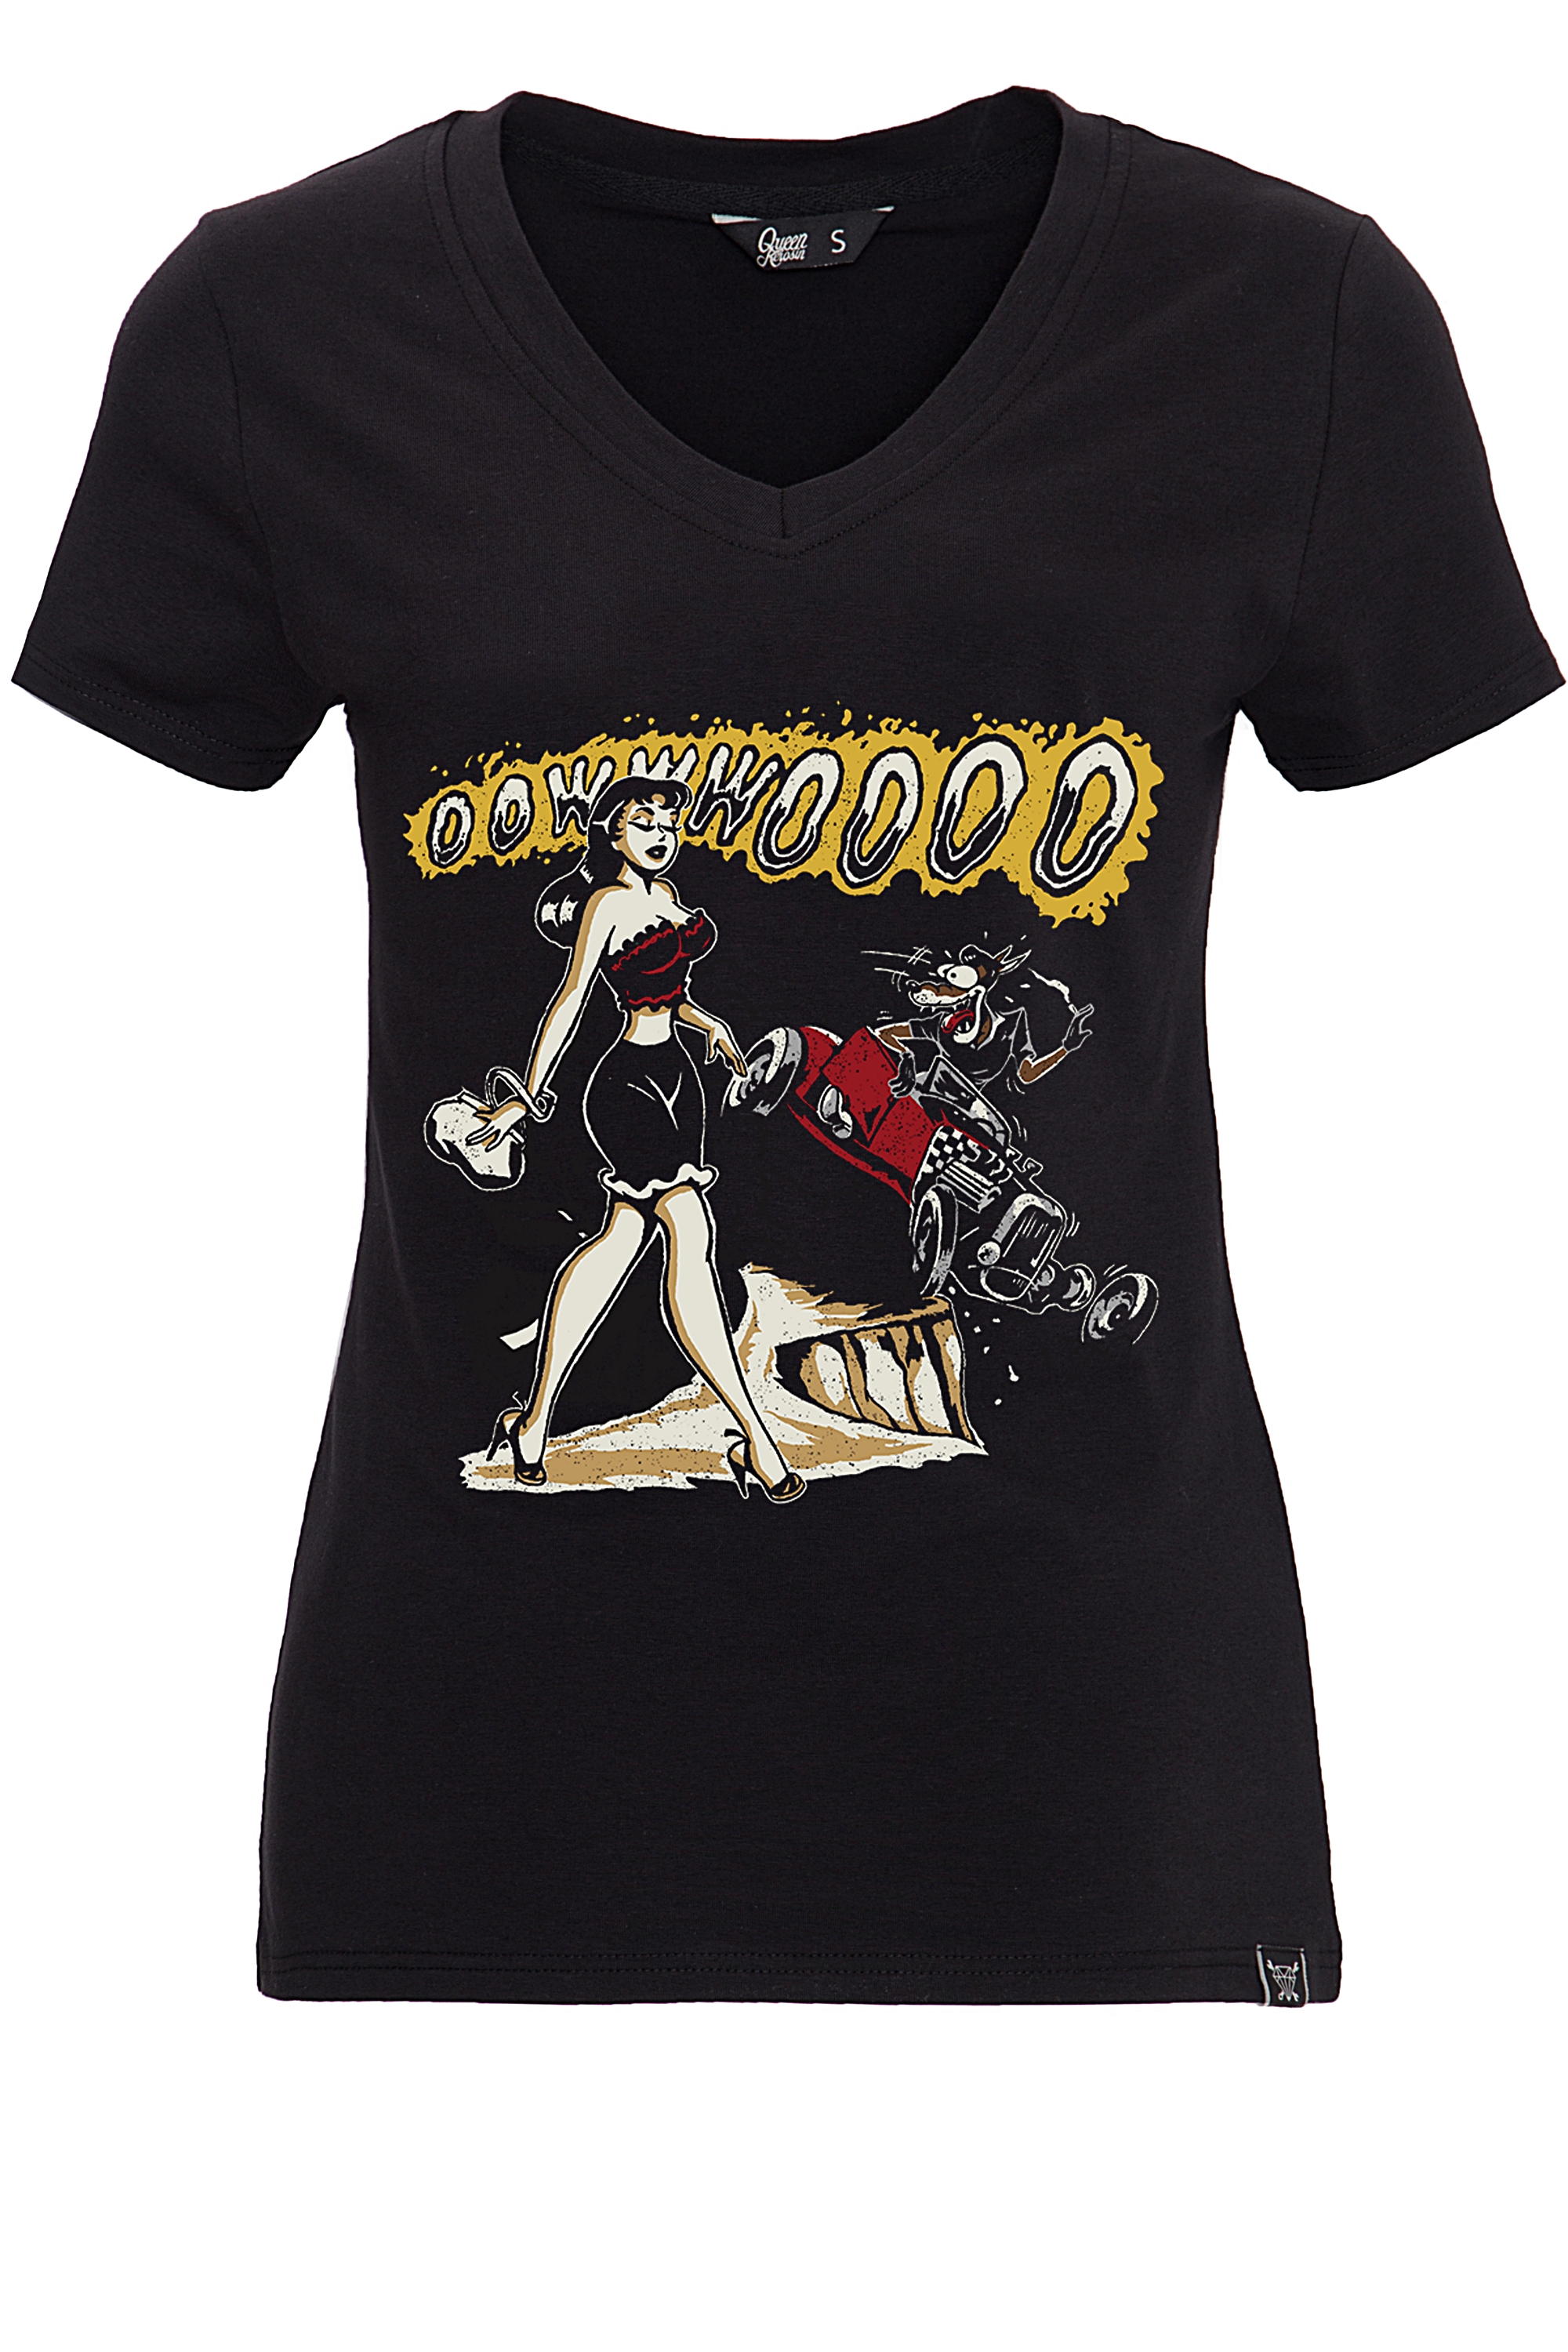 Queen Kerosin T-Shirt - Oowwwoooo XL